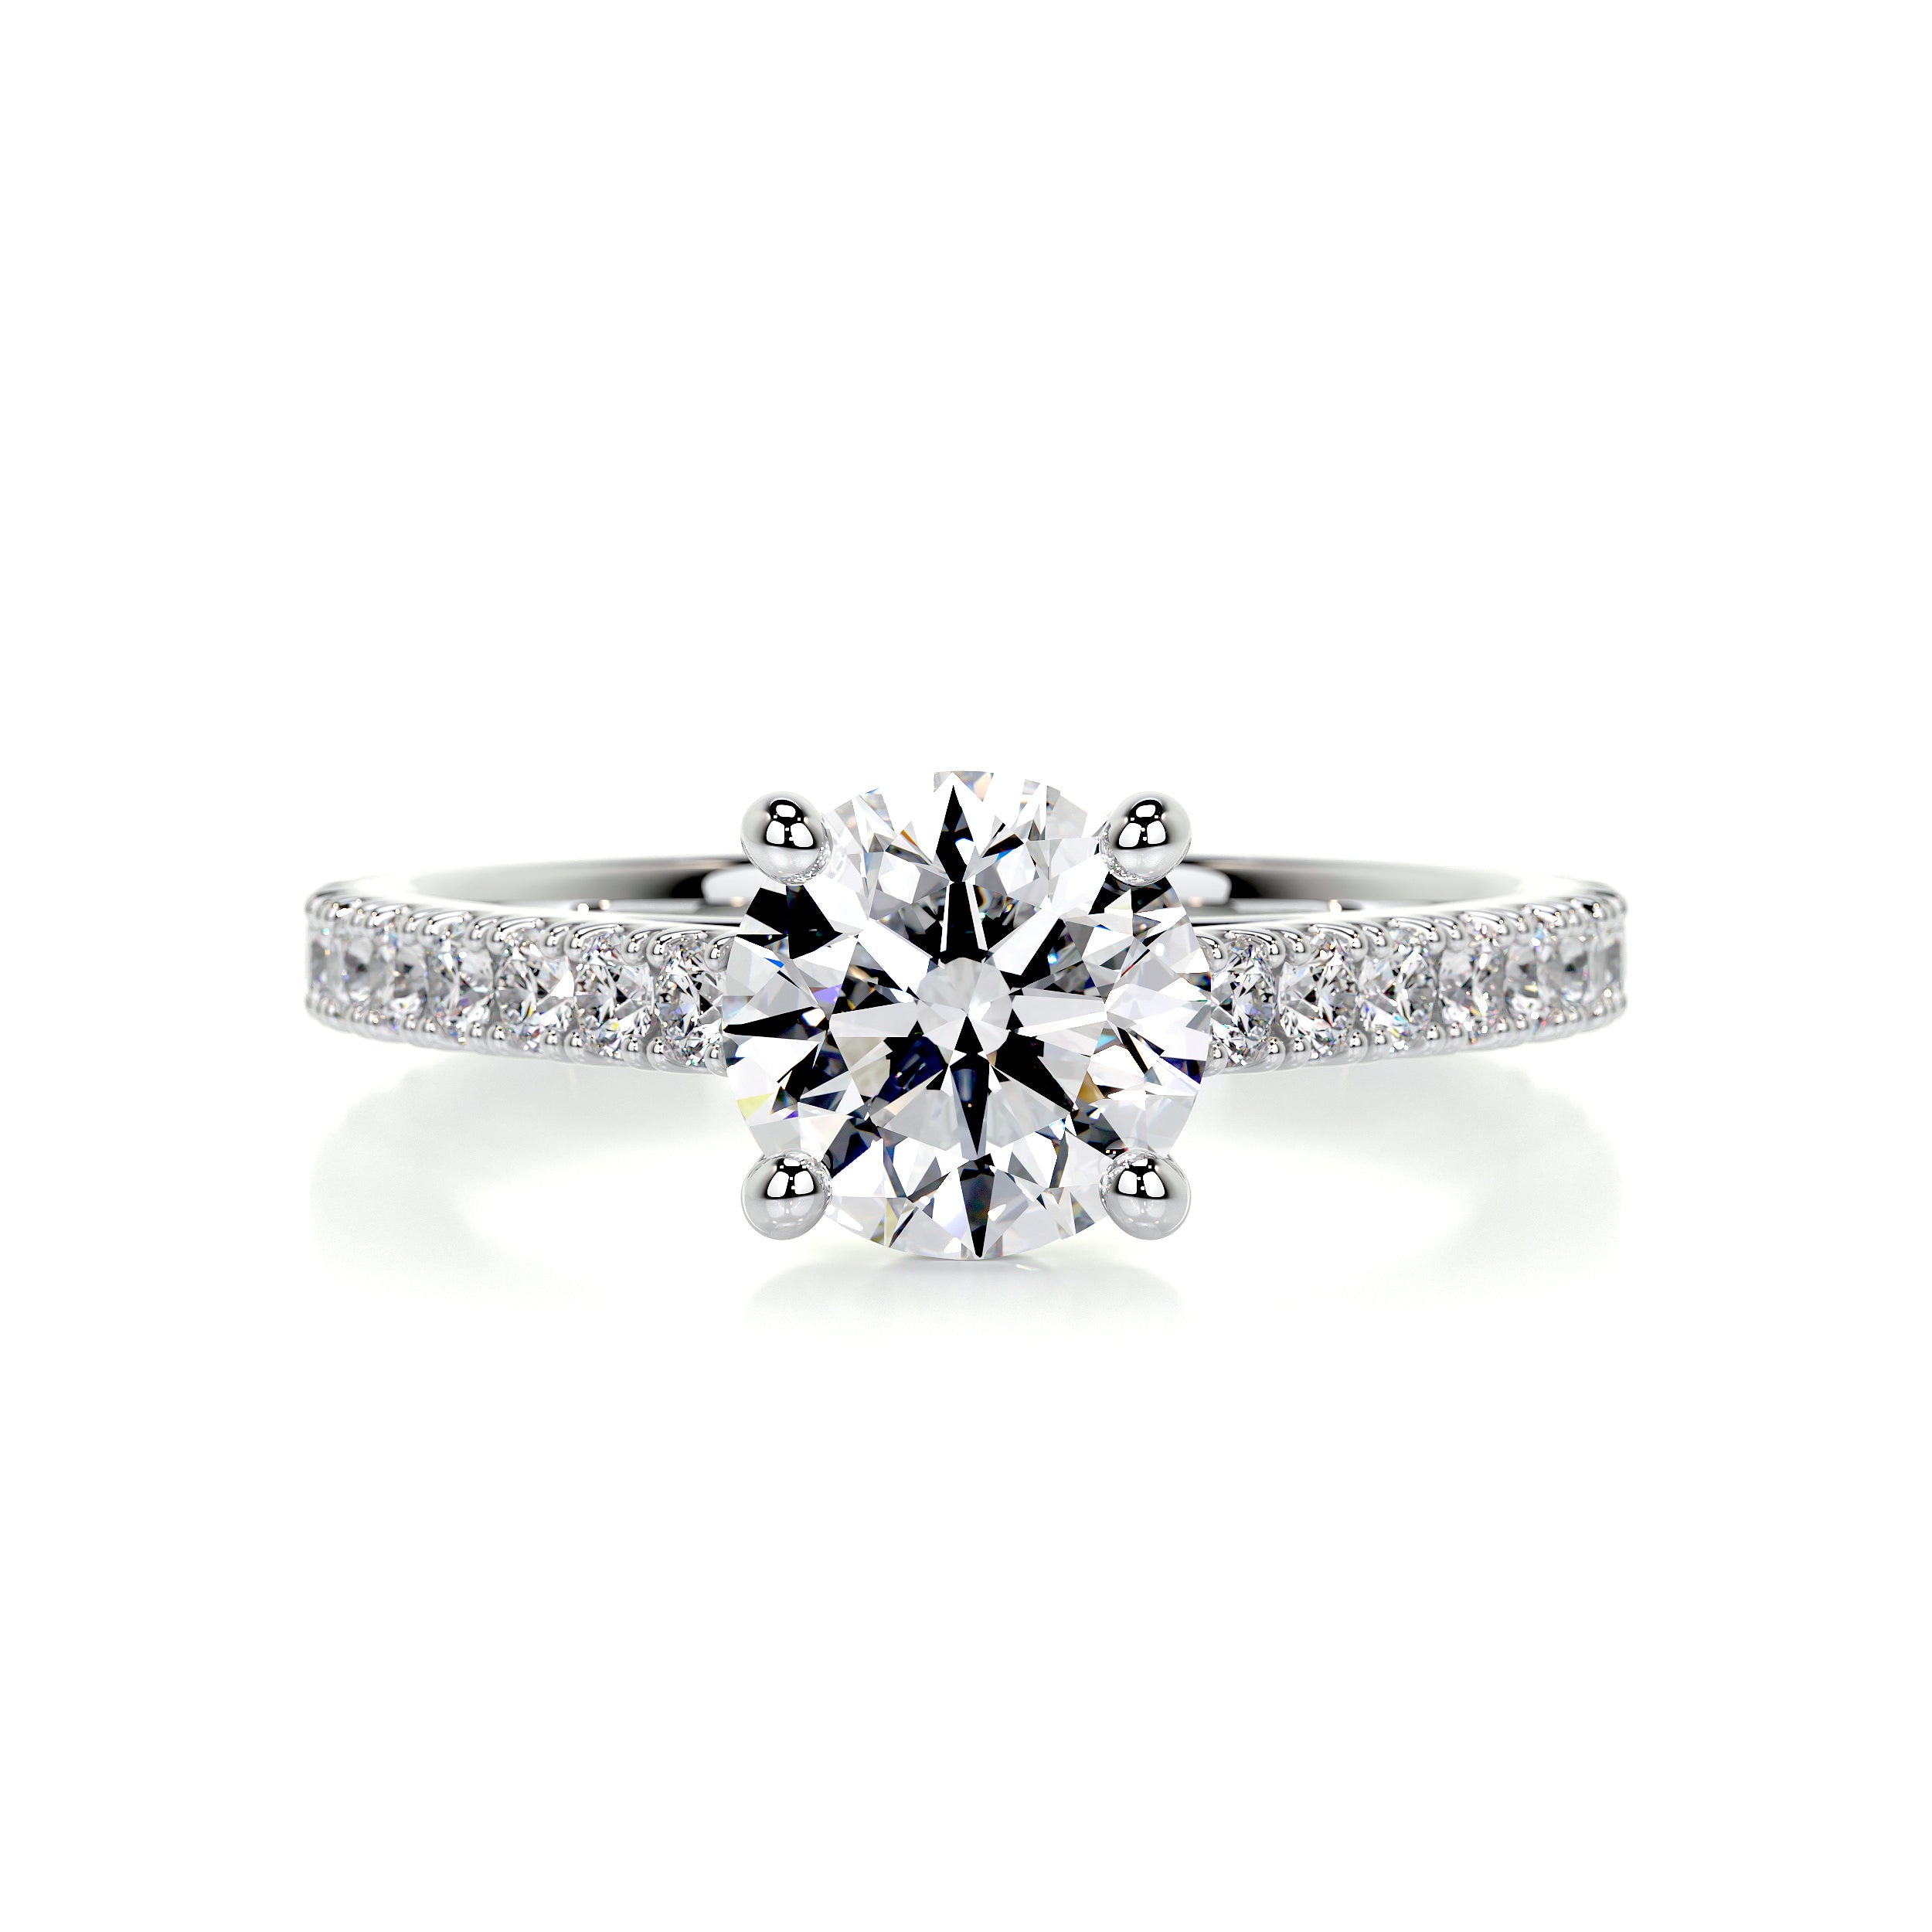 Aria Diamond Engagement Ring   (1 Carat) -14K White Gold